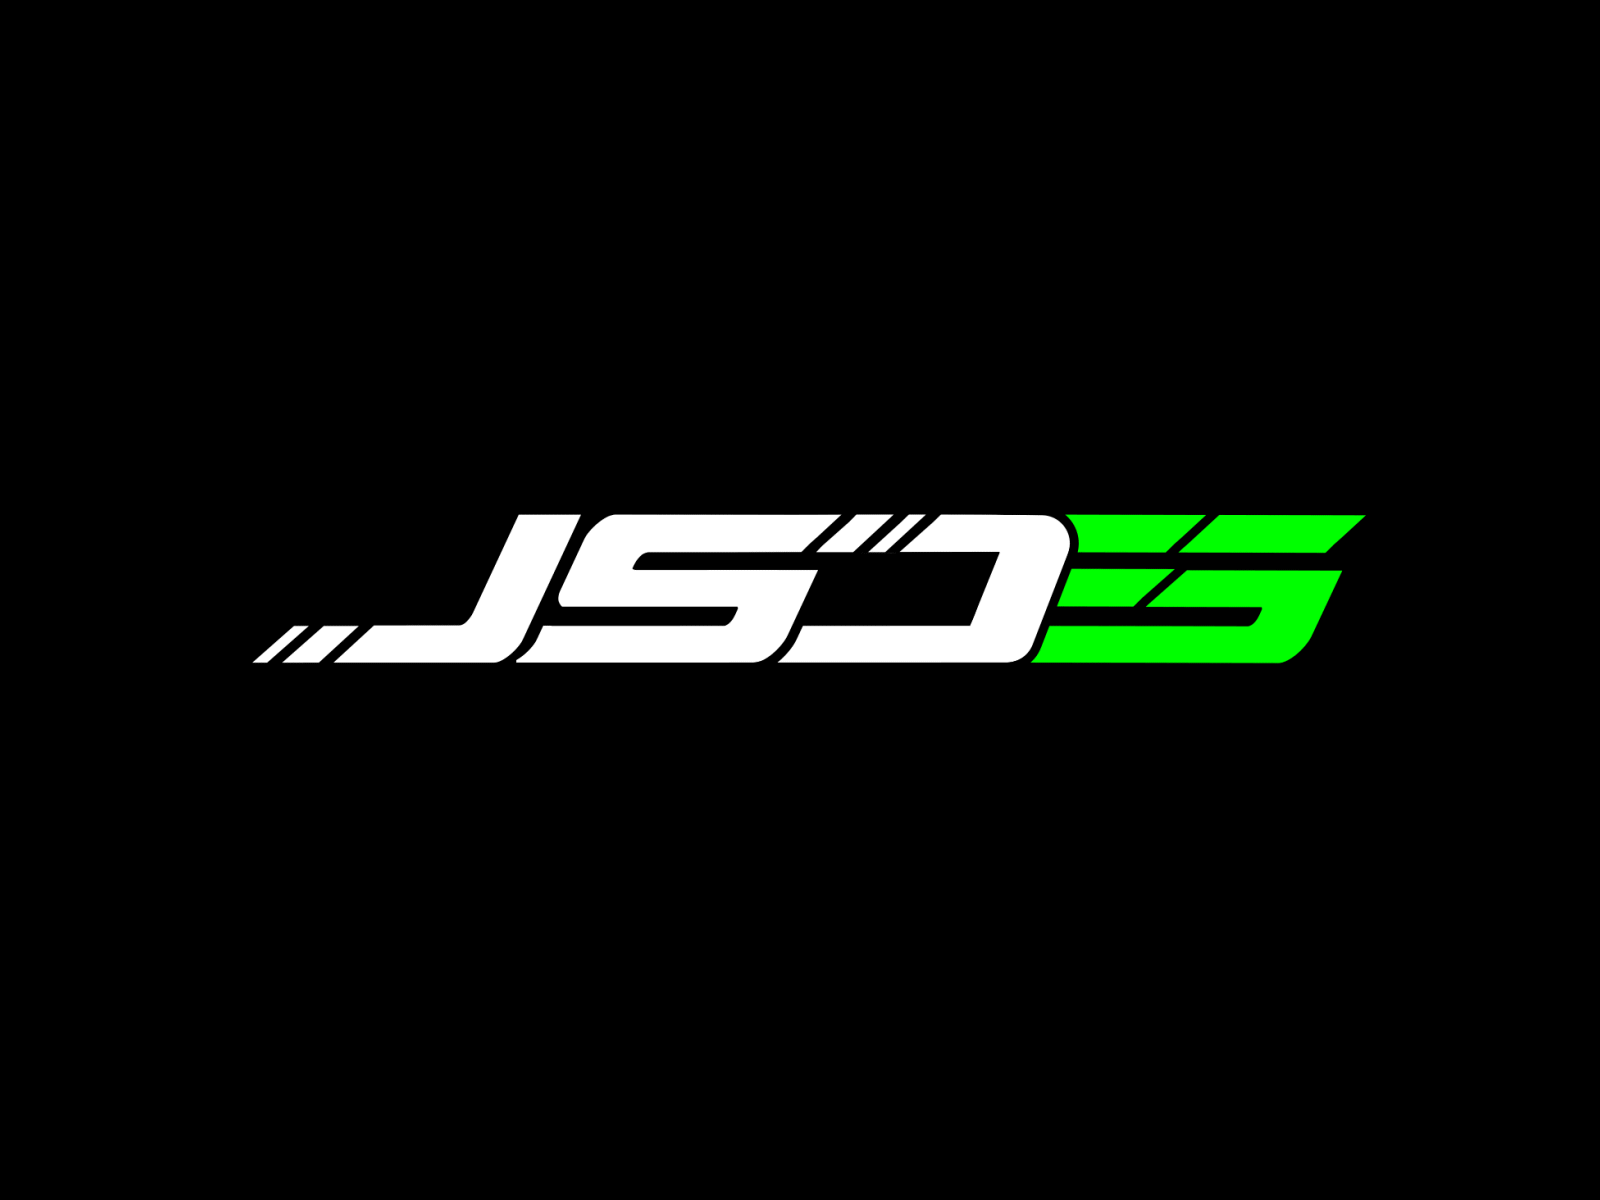 Jsds Logo Animation animatedlogo animation letters logo logo animation motion graphics